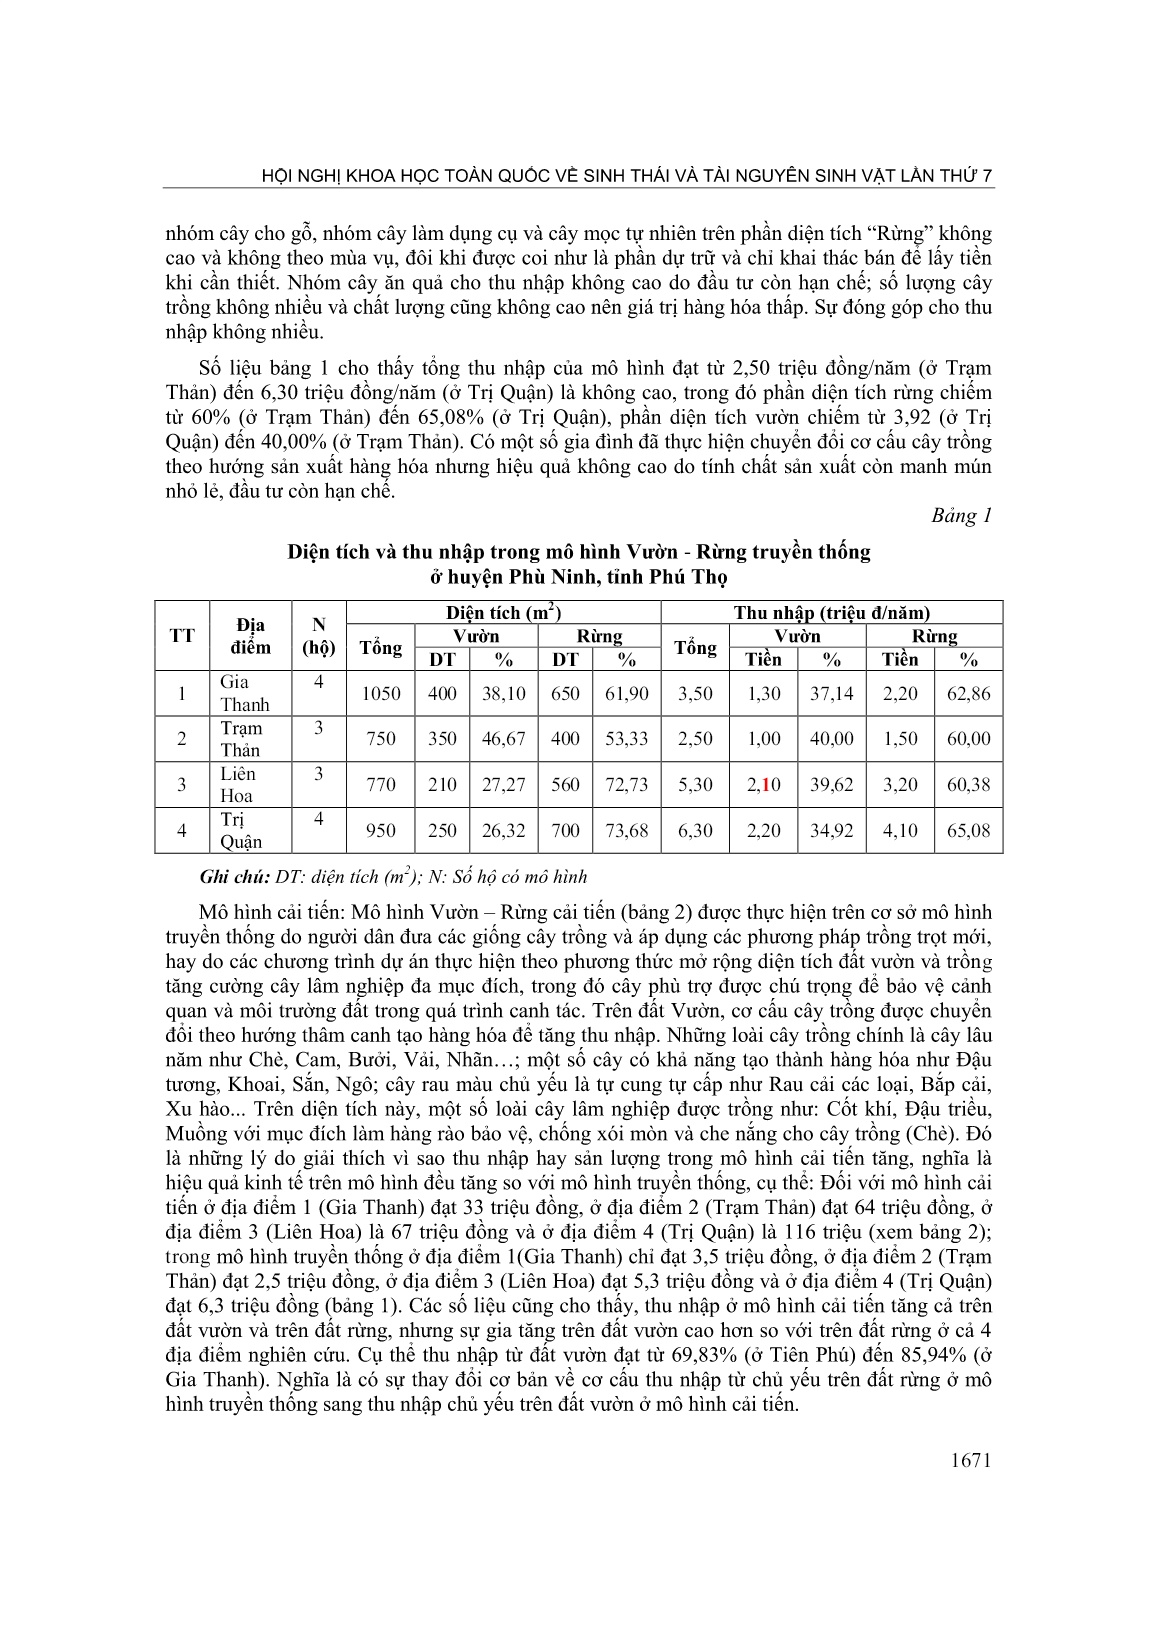 Hiện trạng mô hình nông lâm kết hợp ở huyện Phù Ninh tỉnh Phú Thọ trang 3